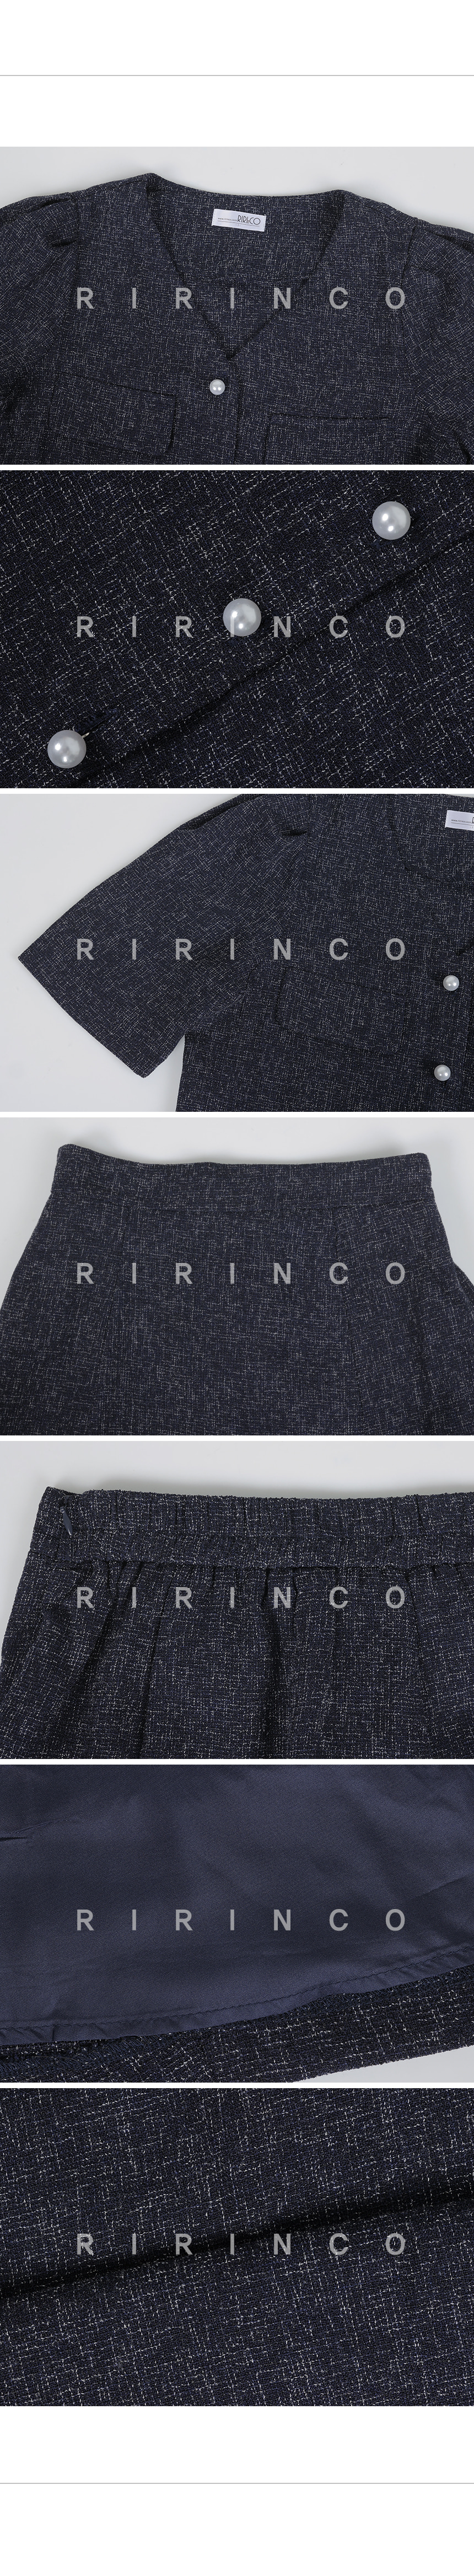 RIRINCO サマーツイードジャケット＆スカートツーピースセット